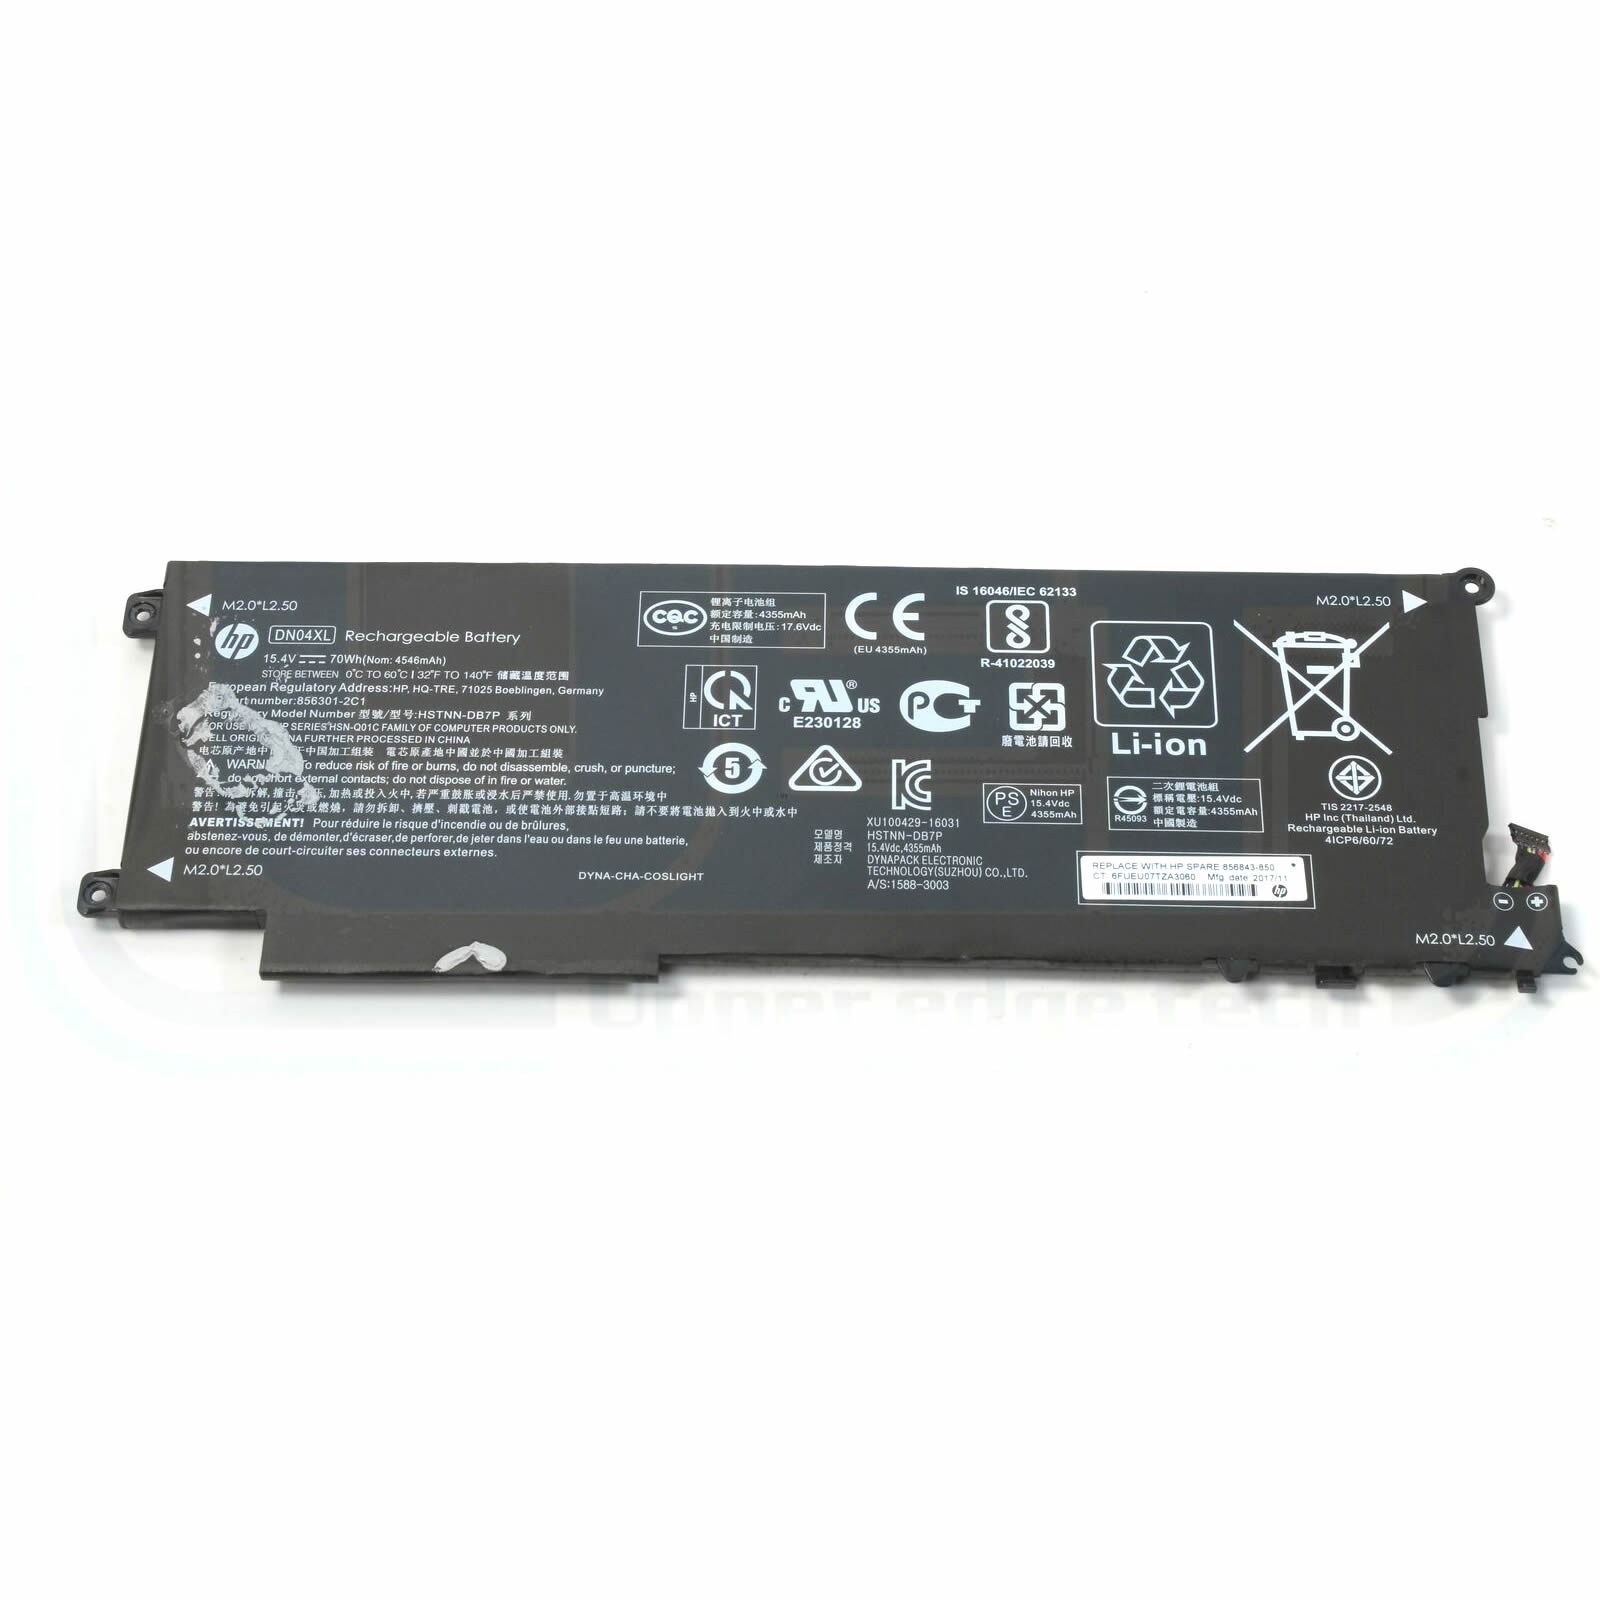 Batterie originale HP HSTNN-DB7P 856843-850 HSN-Q01C 15.4V 4546mAh, 70Wh pour ordinateur portable HP ZBook x2 G4 2ZB85EA, ZBook x2 G4 2ZC17EA séries